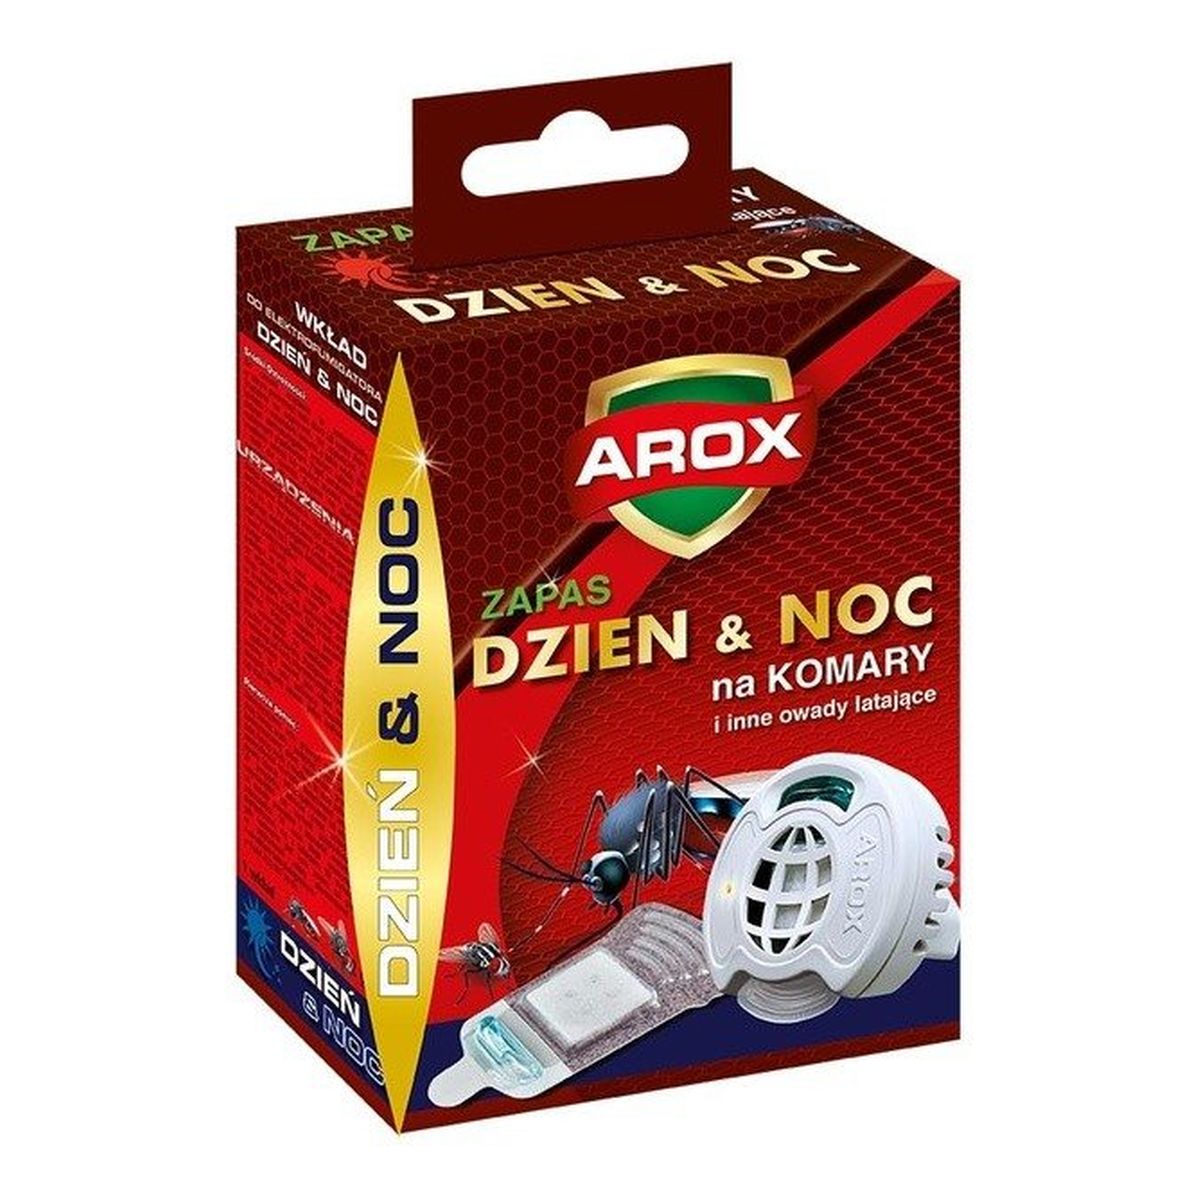 Arox Wkład Zapasowy do elektrofumigatora Dzień&noc